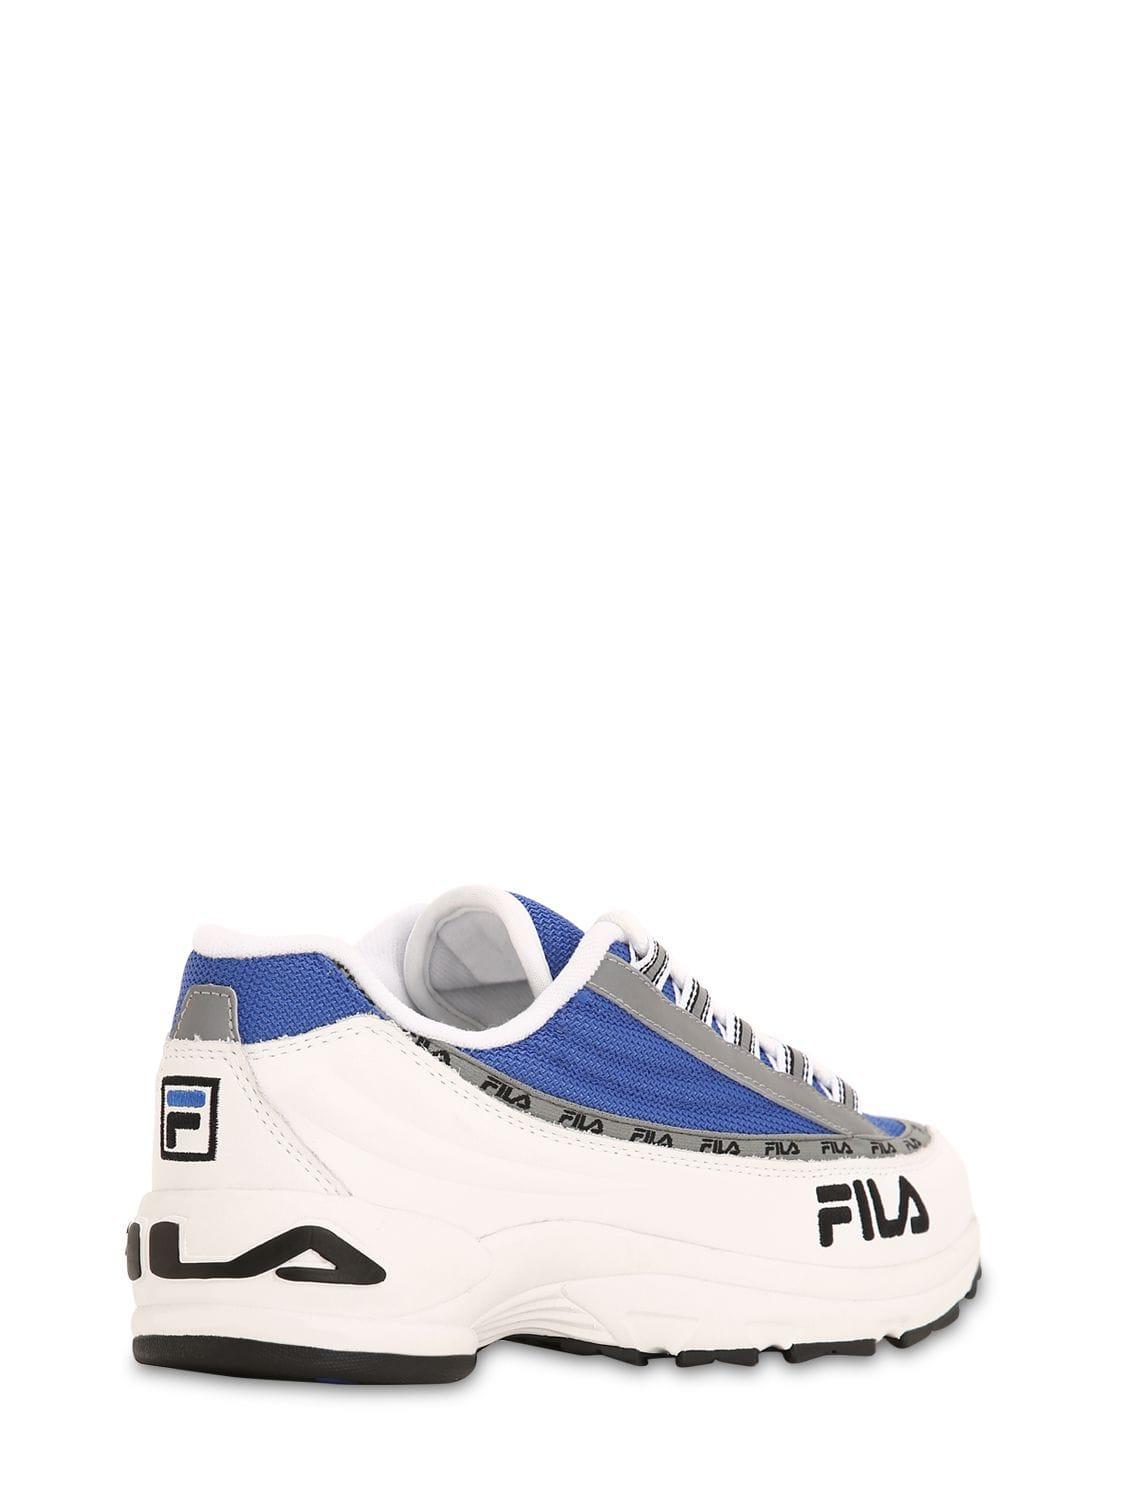 Fila Leather Sneakers Blue Men -